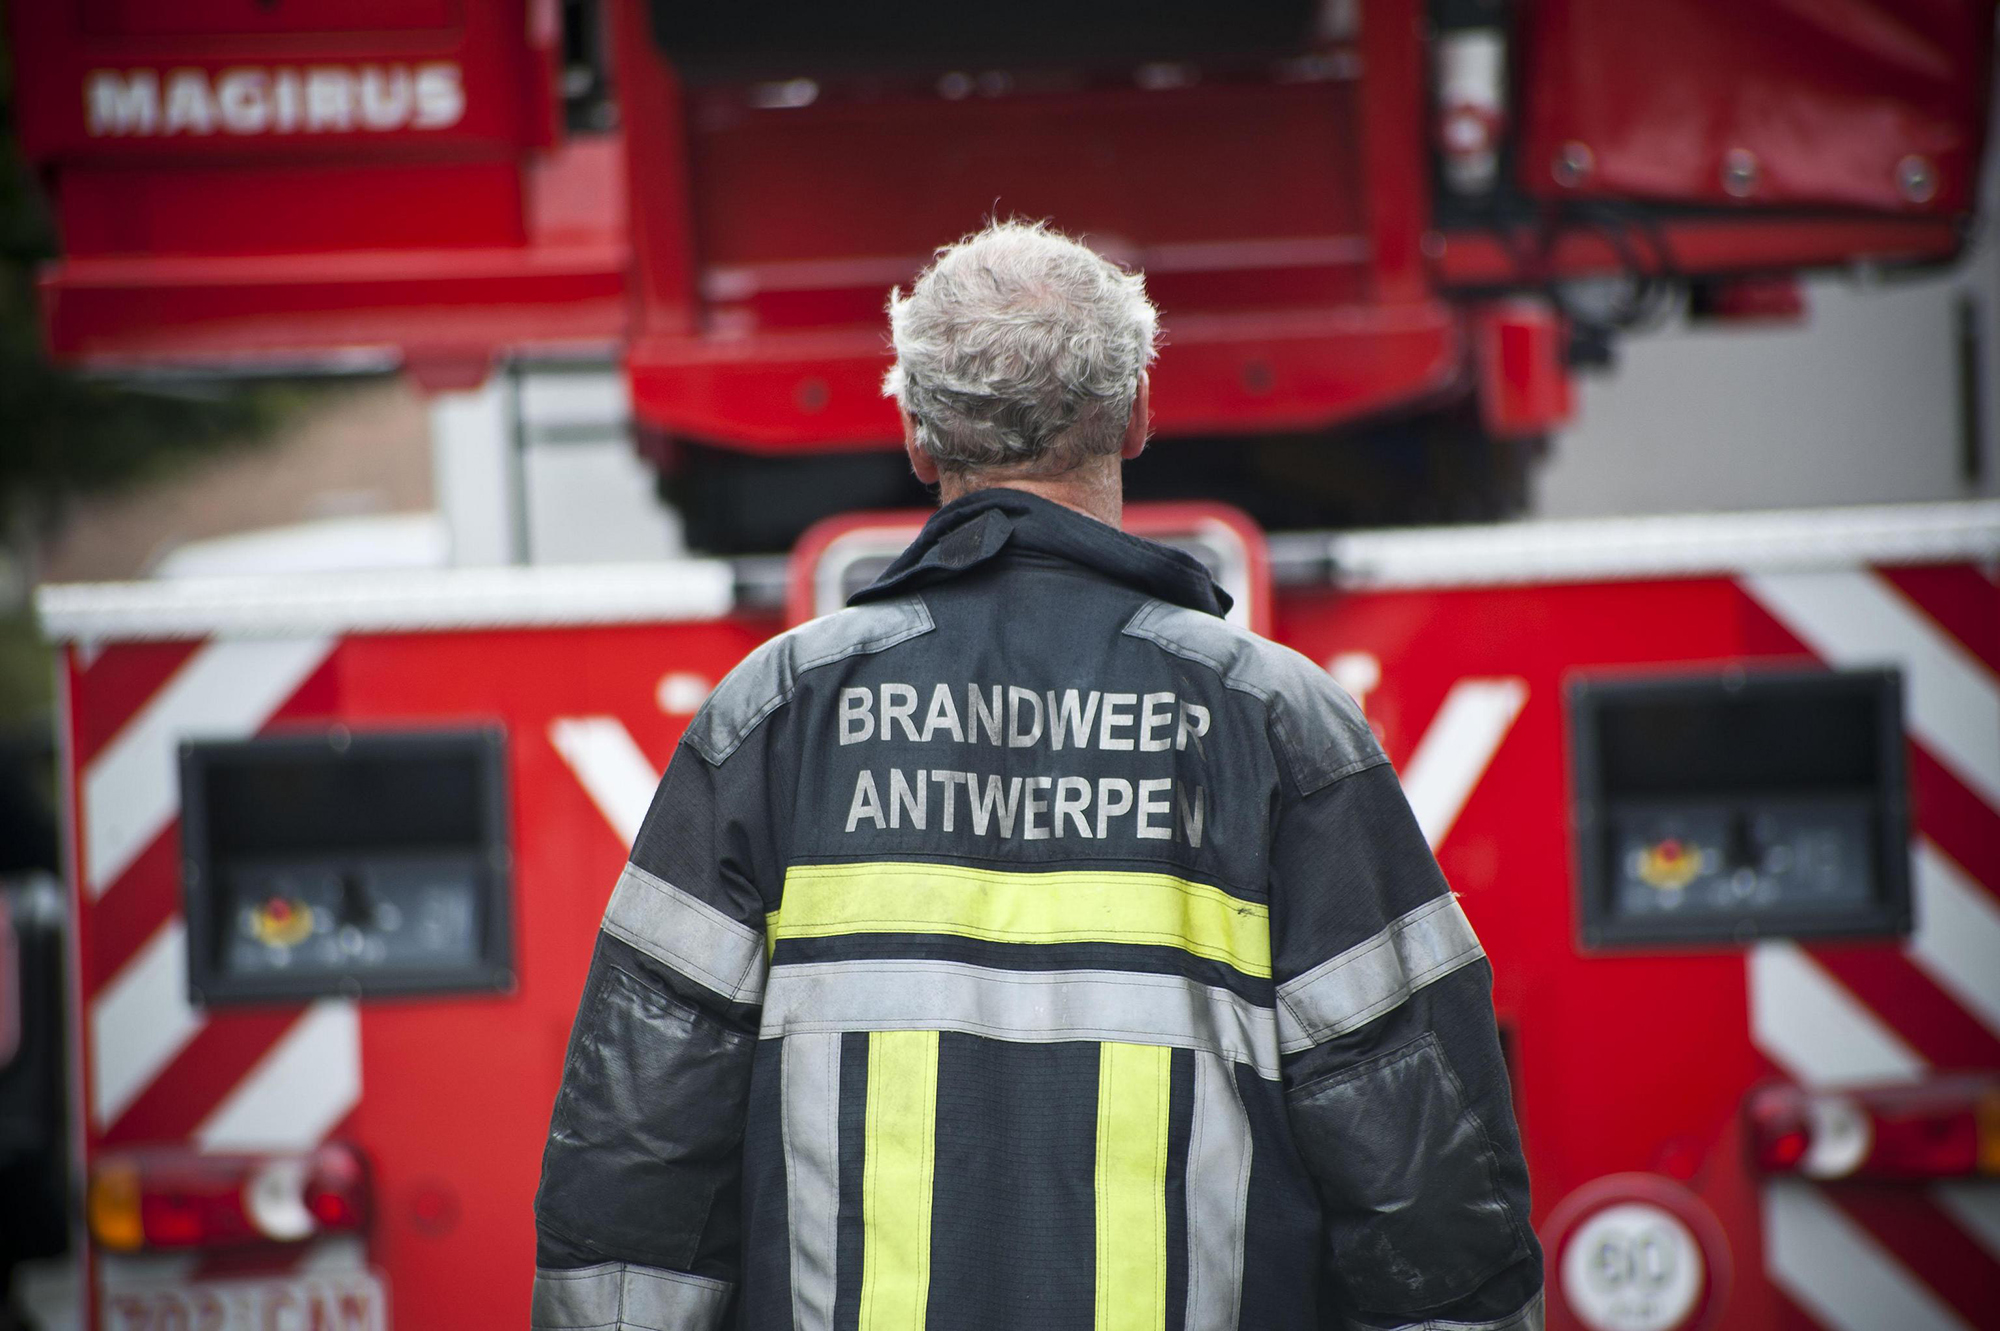 Feuerwehr Antwerpen (Bild: Dries Luyten/Belga)